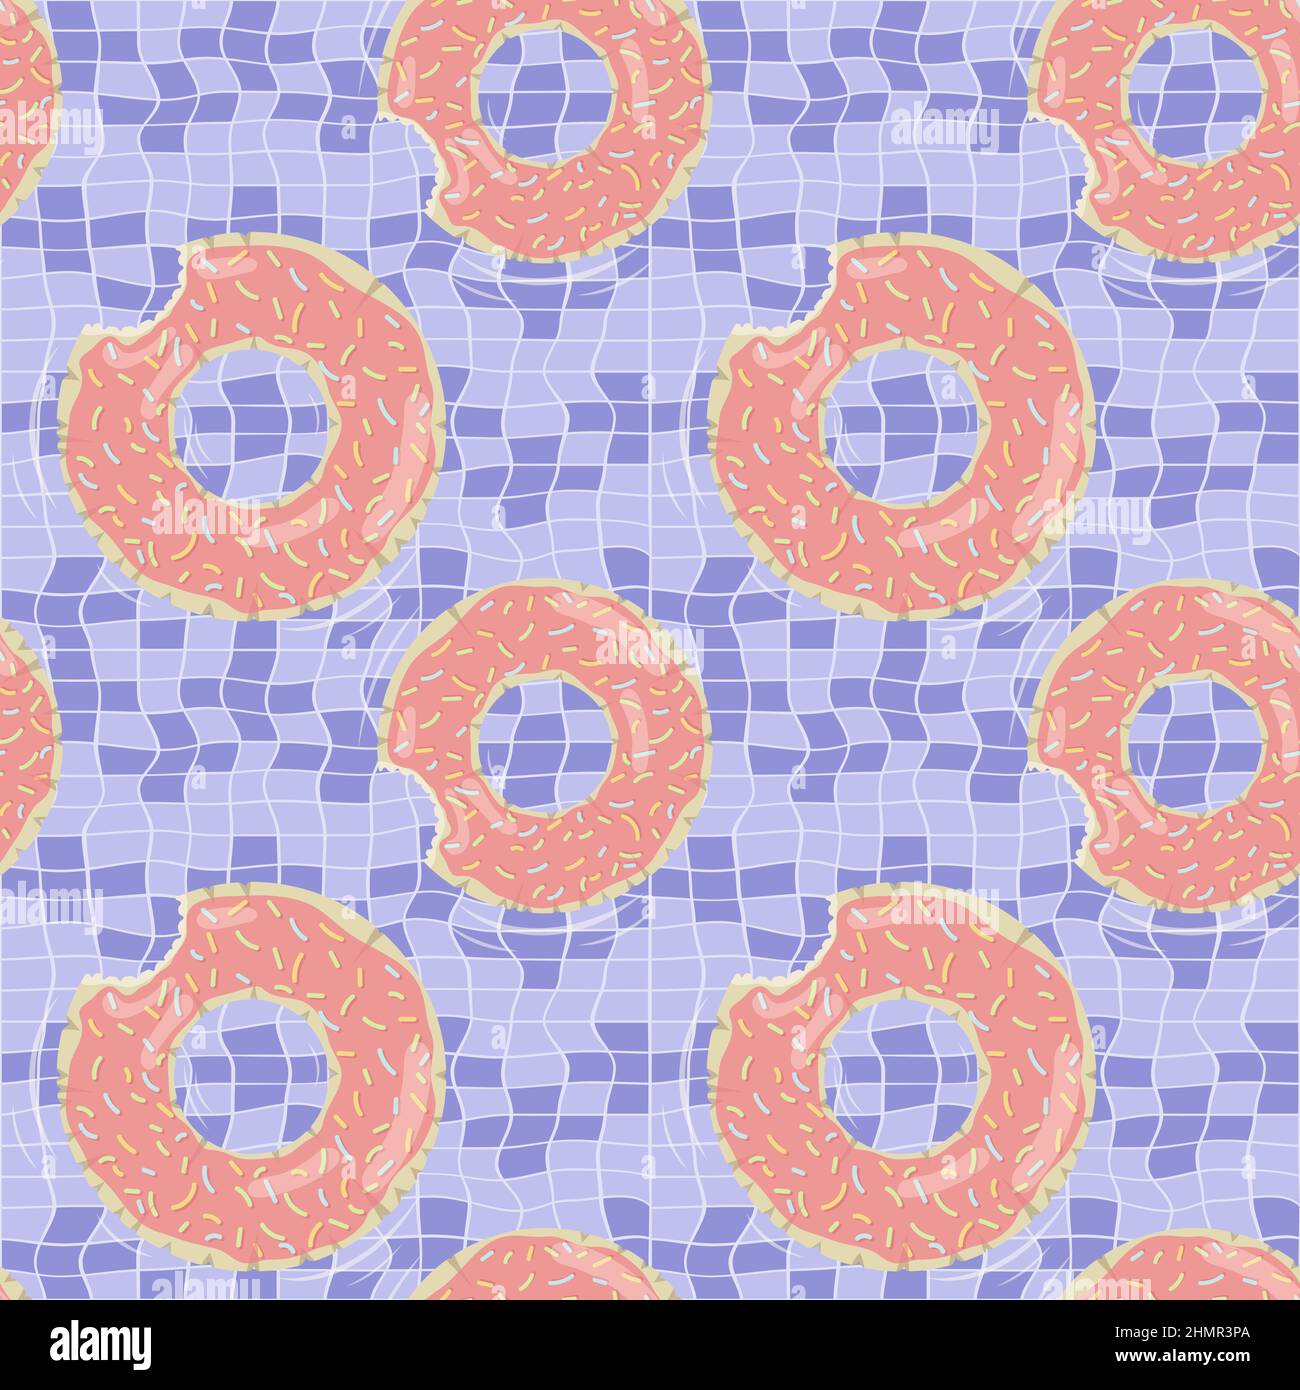 Nahtloses Muster mit donut geformten aufblasbaren Matratzen für Poolparty, Stoffhintergrund und Banner Stock Vektor